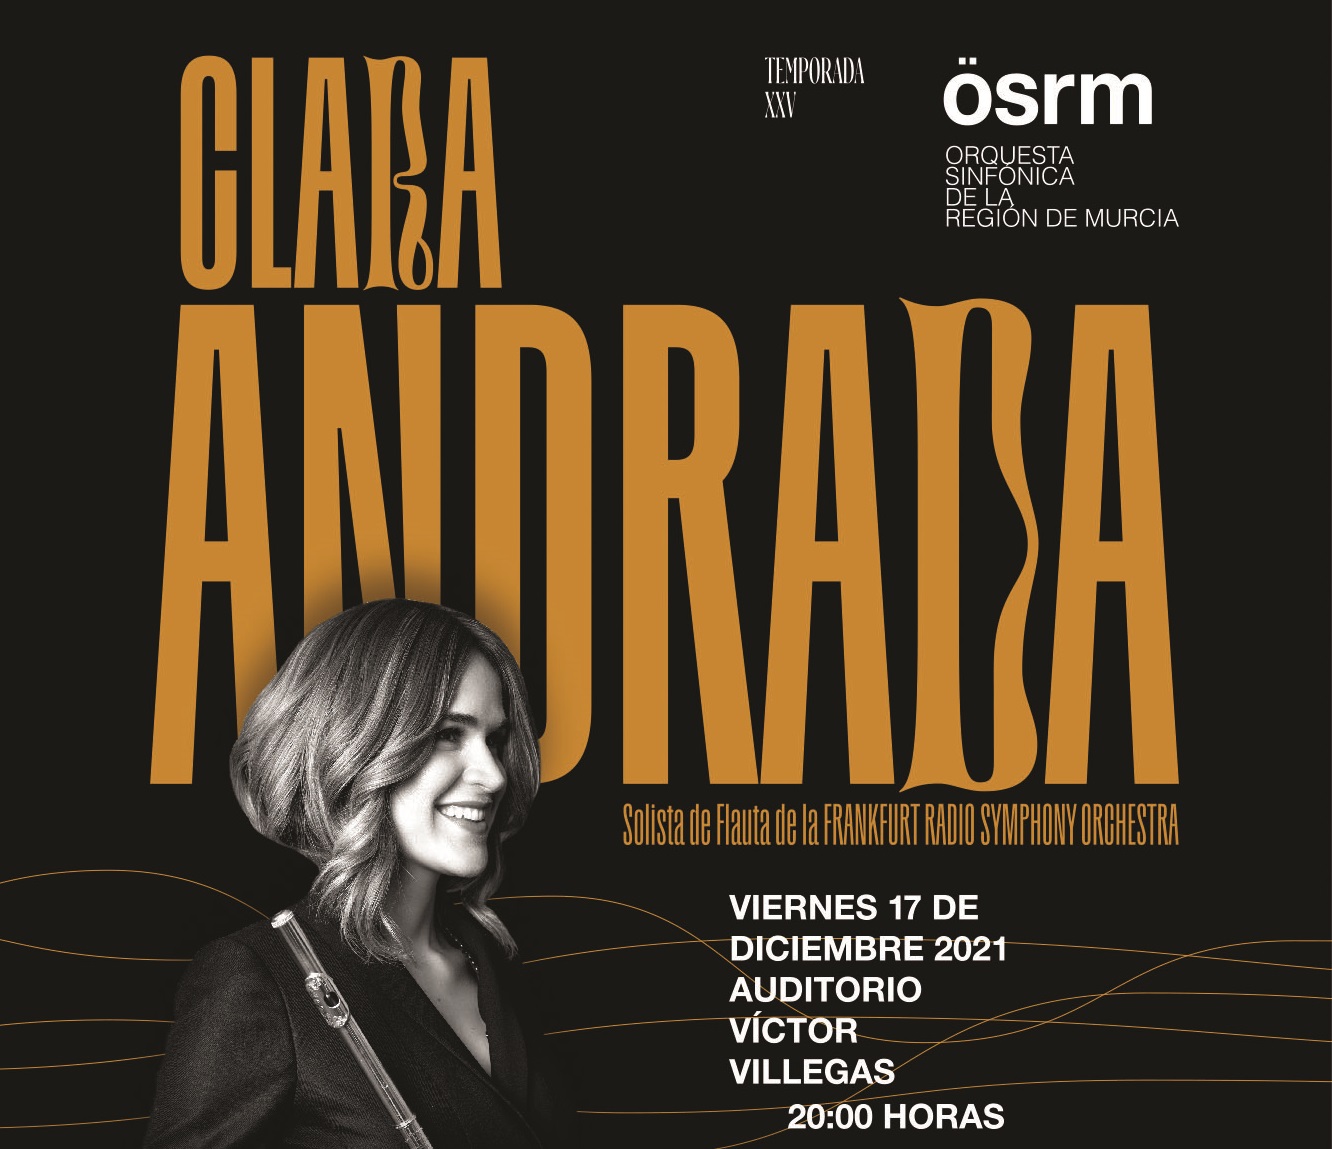 La OSRM actúa junto a Clara Andrada este viernes